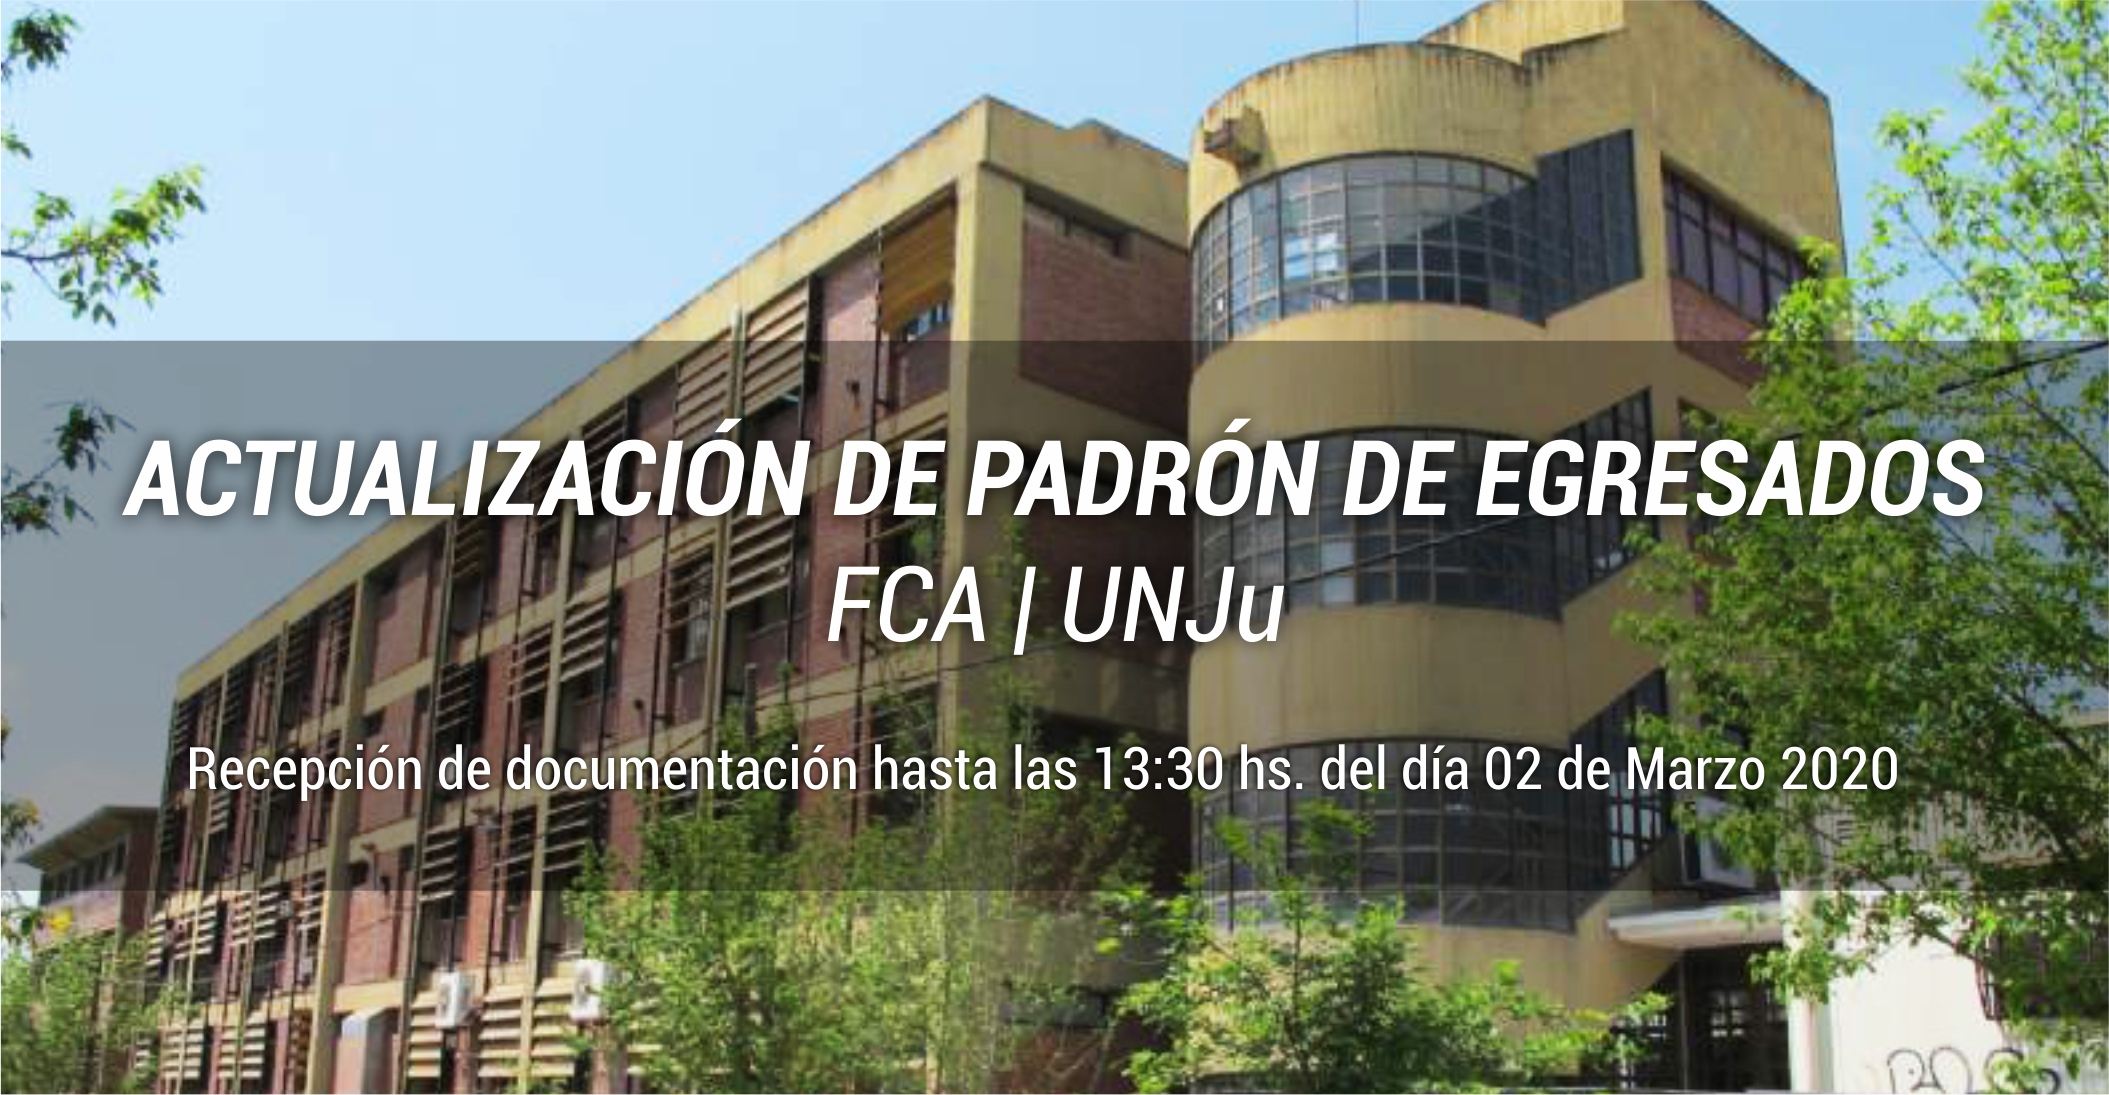 ACTUALIZACIÓN DE PADRÓN DE EGRESADOS DE LA FCA | unju